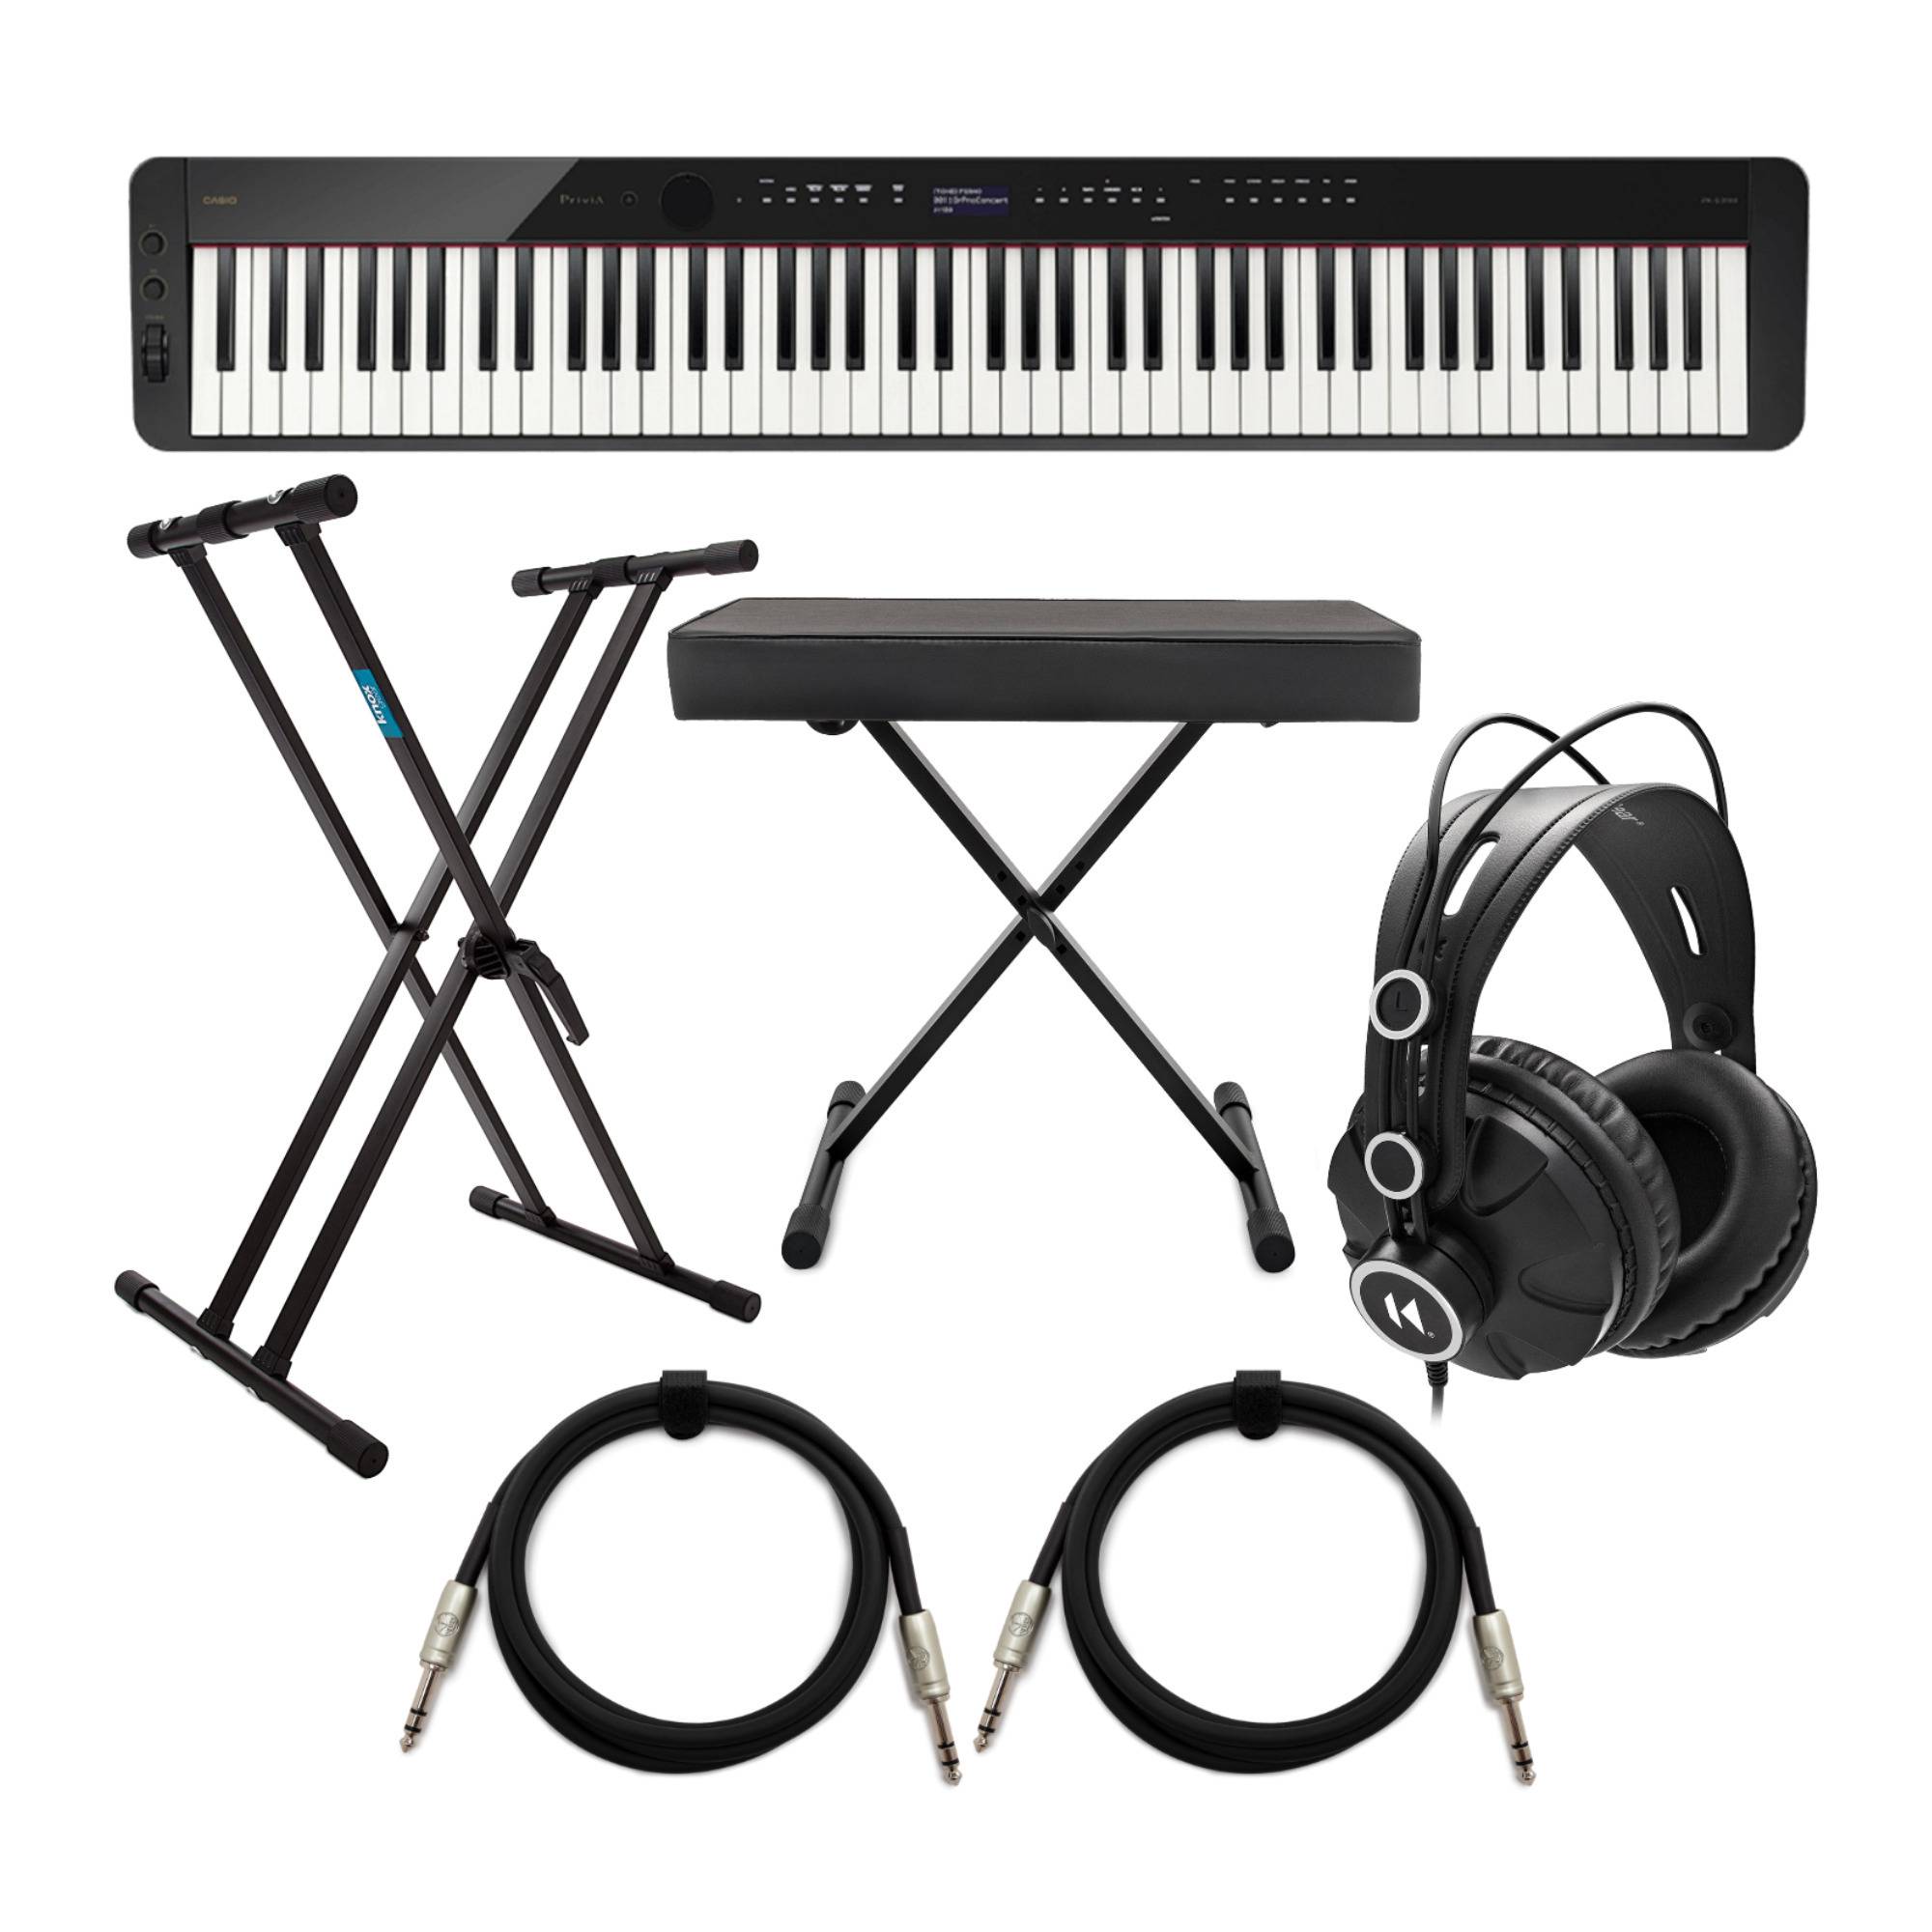 Casio PX-S3100 88-Key Digital Piano (Black) Bundle